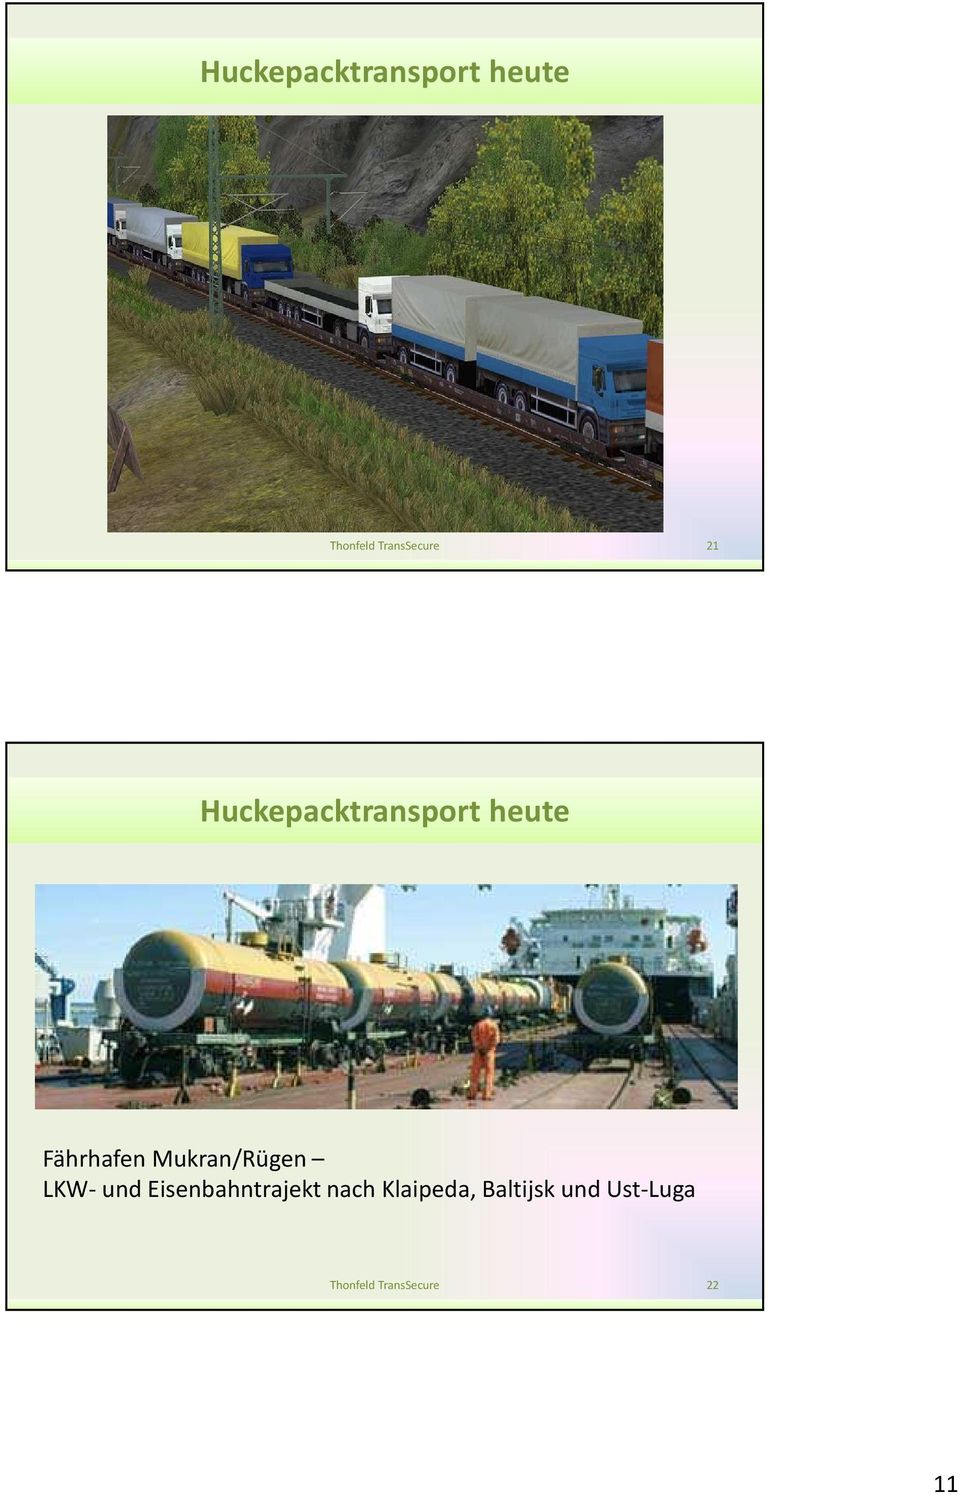 Mukran/Rügen LKW- und Eisenbahntrajekt nach